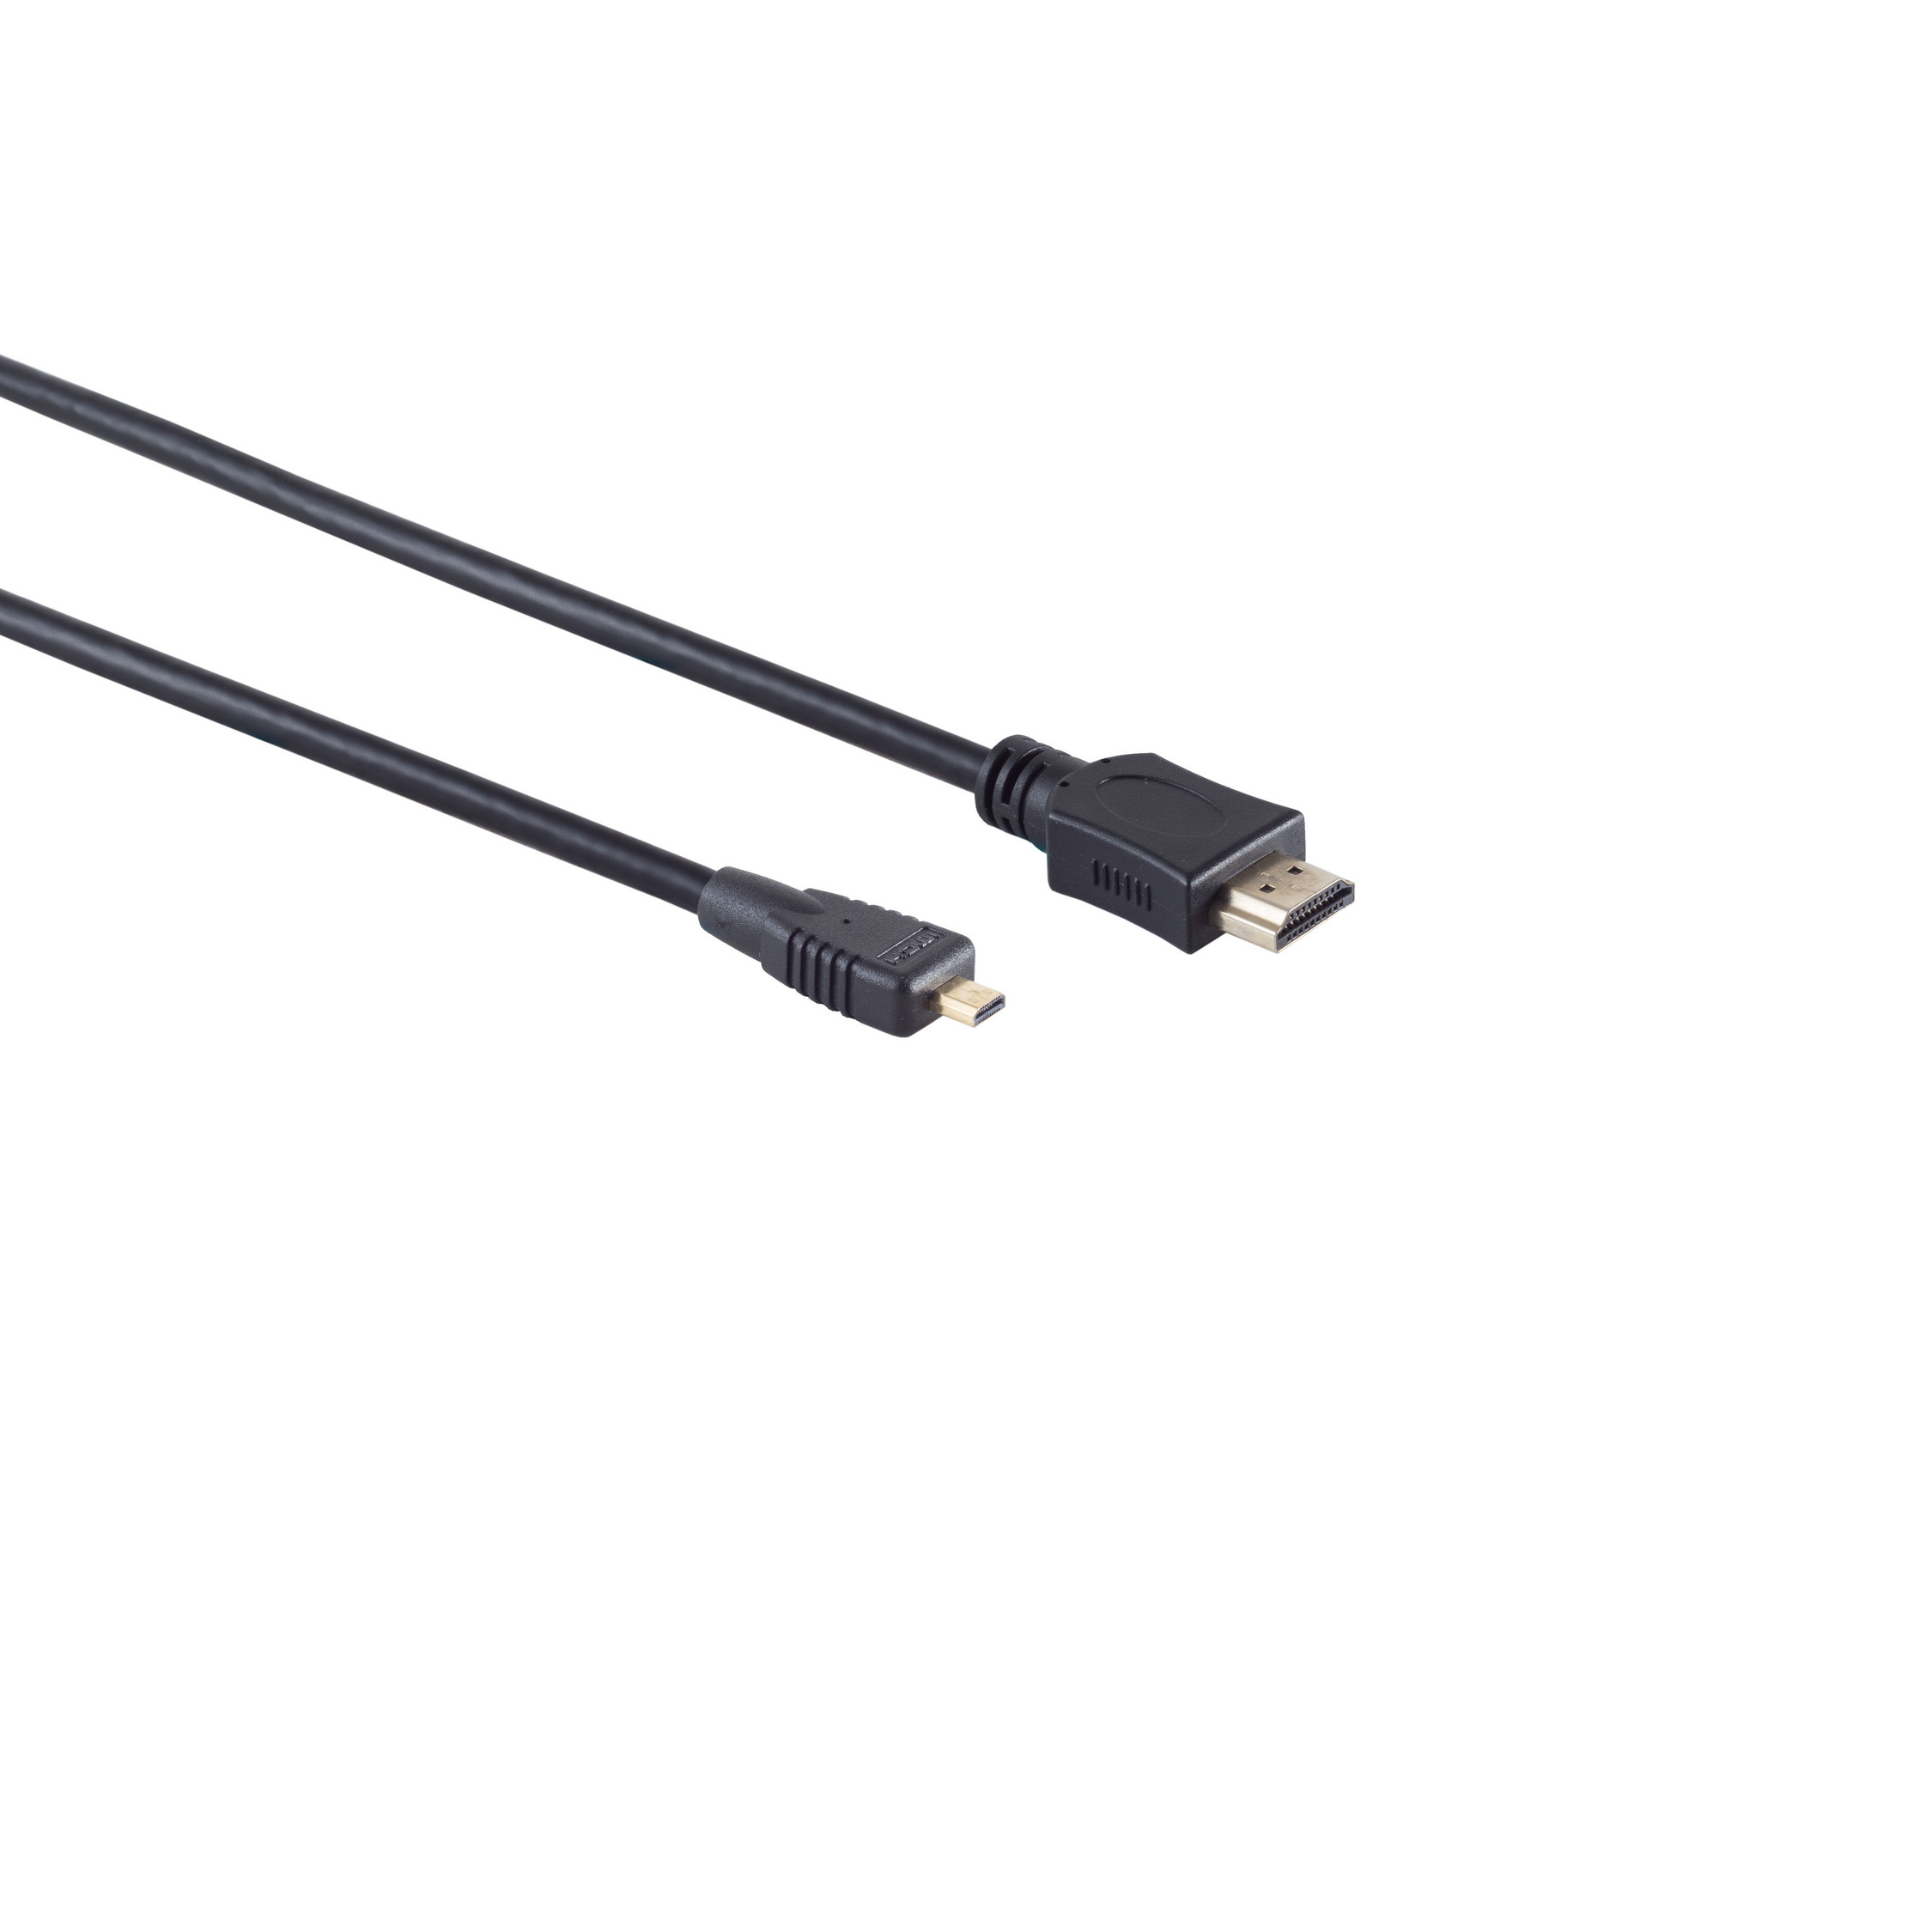 KABELBUDE HDMI 2m A-Stecker/HDMI verg micro D-Stecker HDMI Kabel HEAC